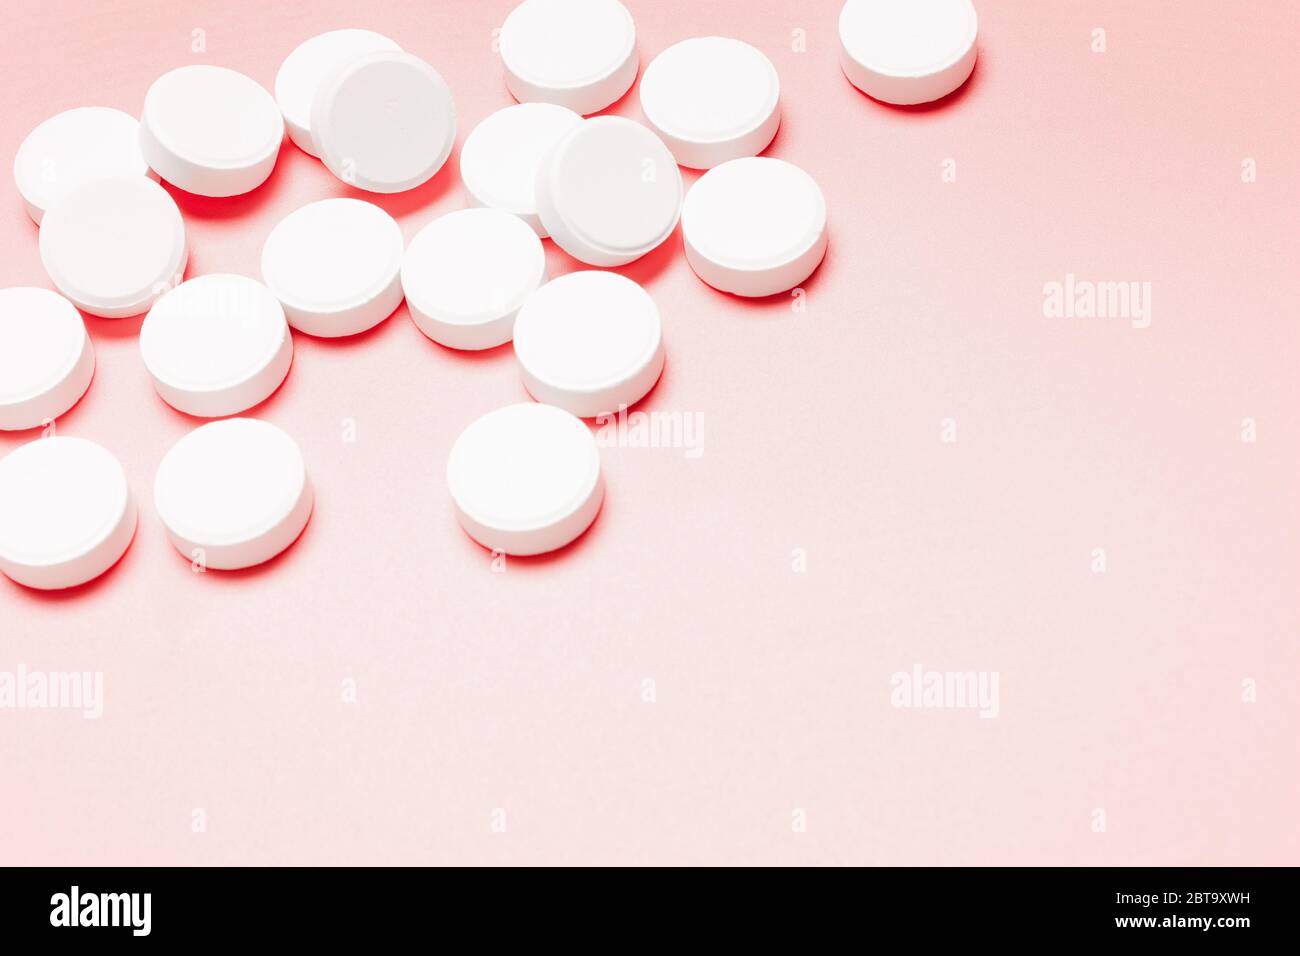 Pilules blanches, rondes sur fond rose. Le concept du traitement de la maladie, des soins de santé, de la santé des femmes. Banque D'Images